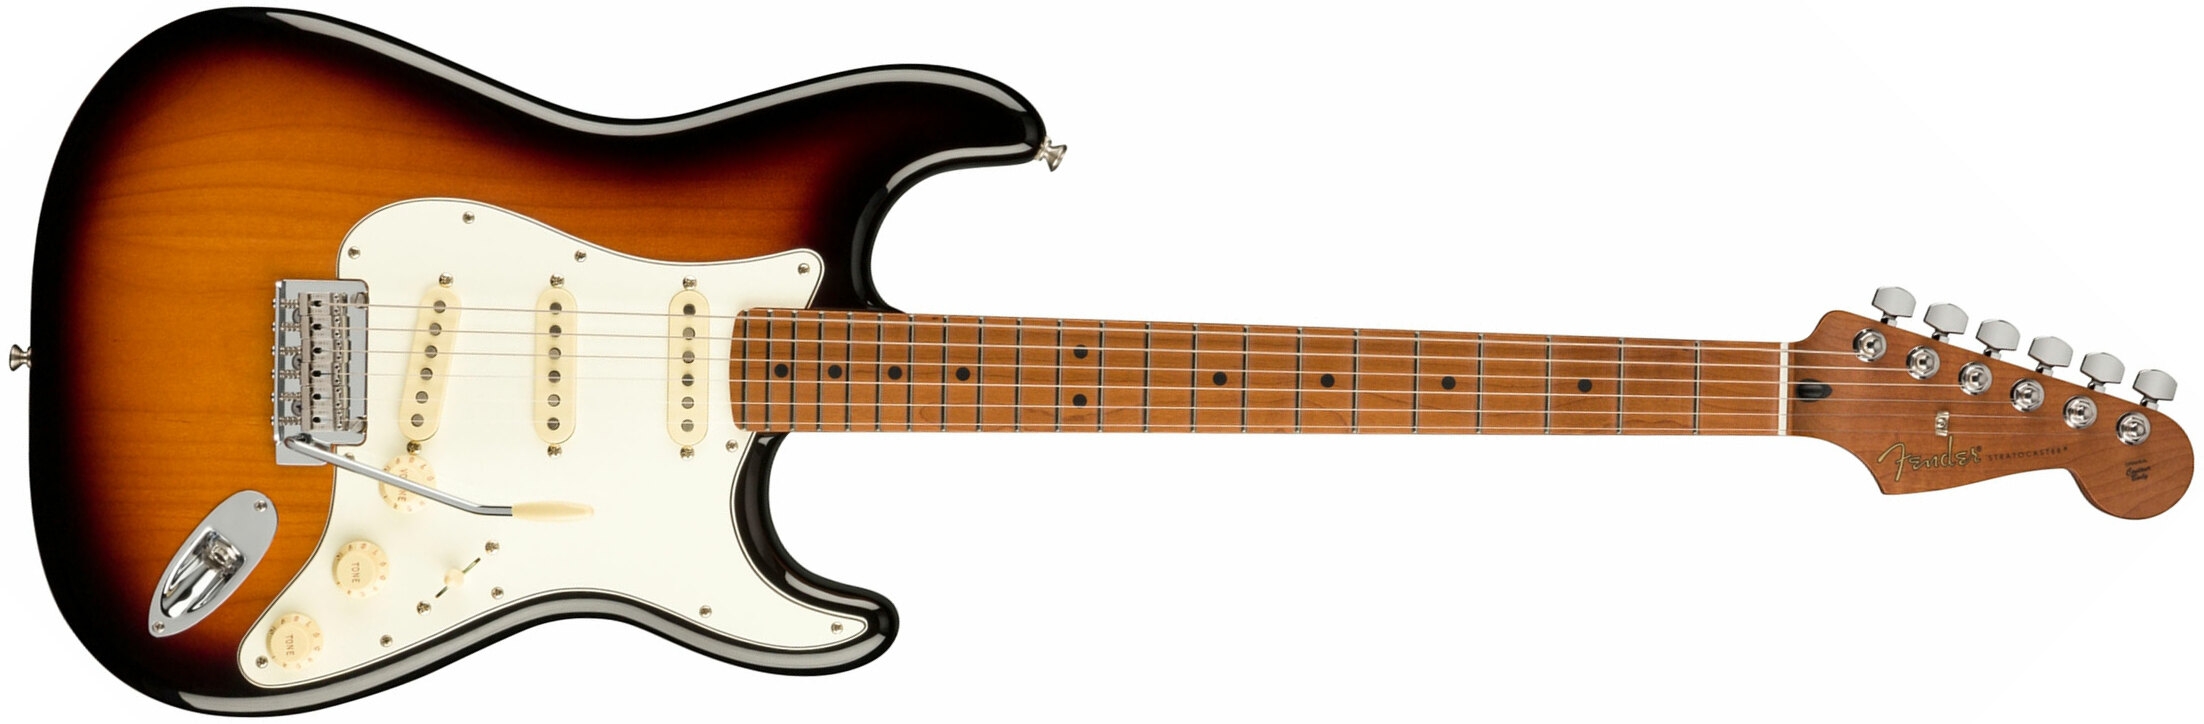 Fender Strat Player 1959 Texas Special Ltd Mex 3s Mn - 2-color Sunburst - Guitare Électrique Forme Str - Main picture